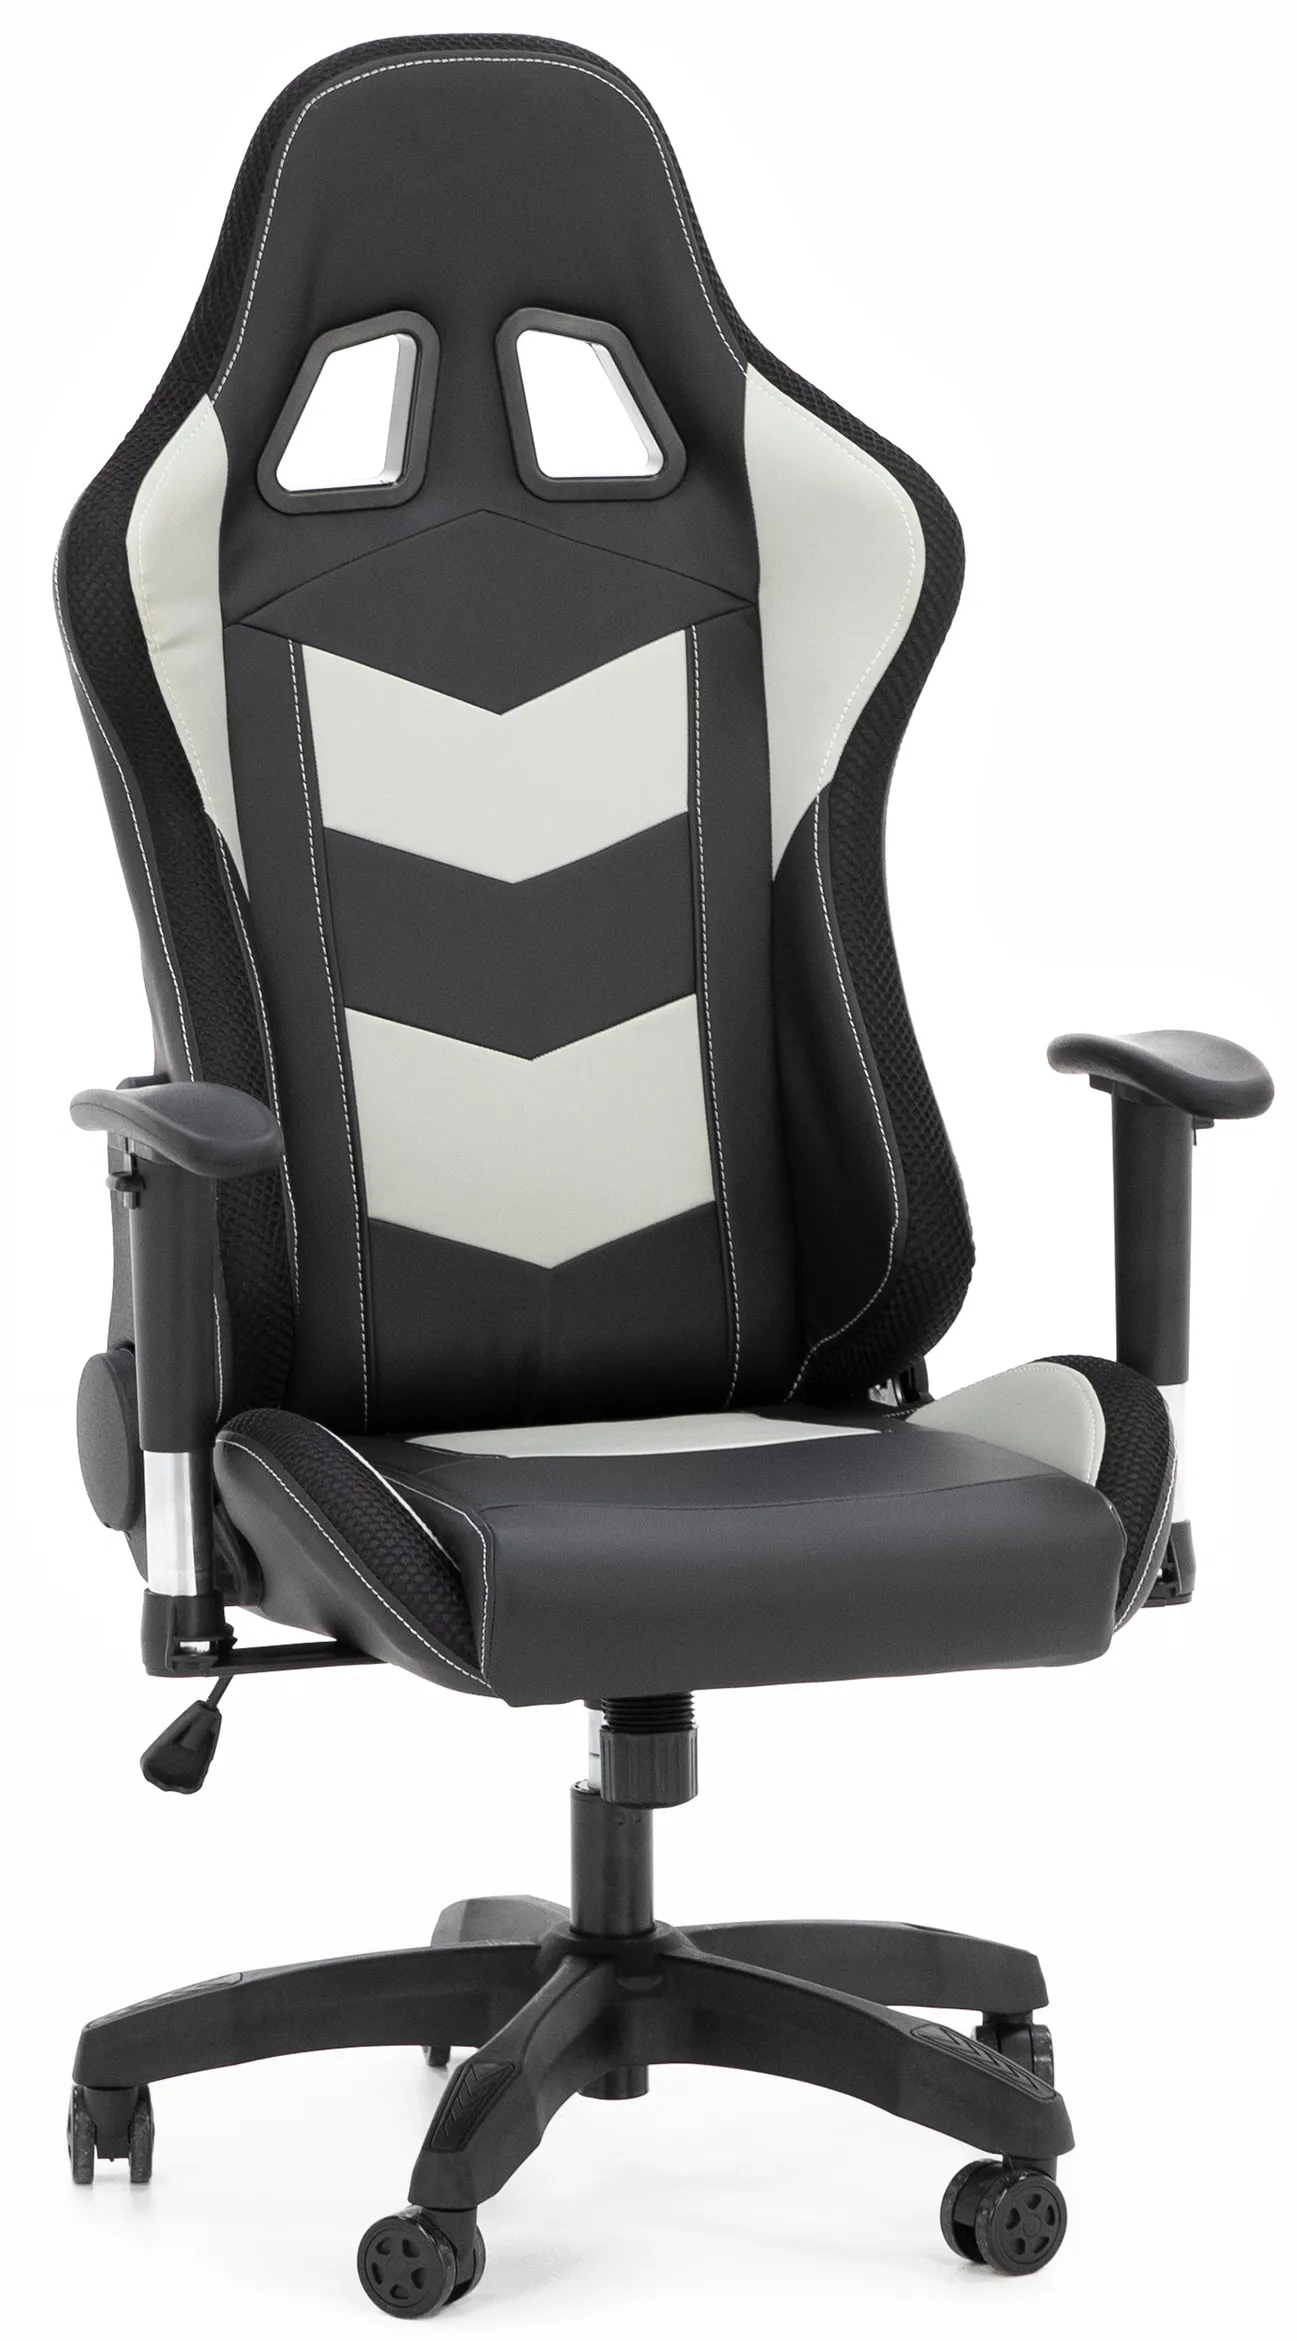 Vivid Gaming Chair